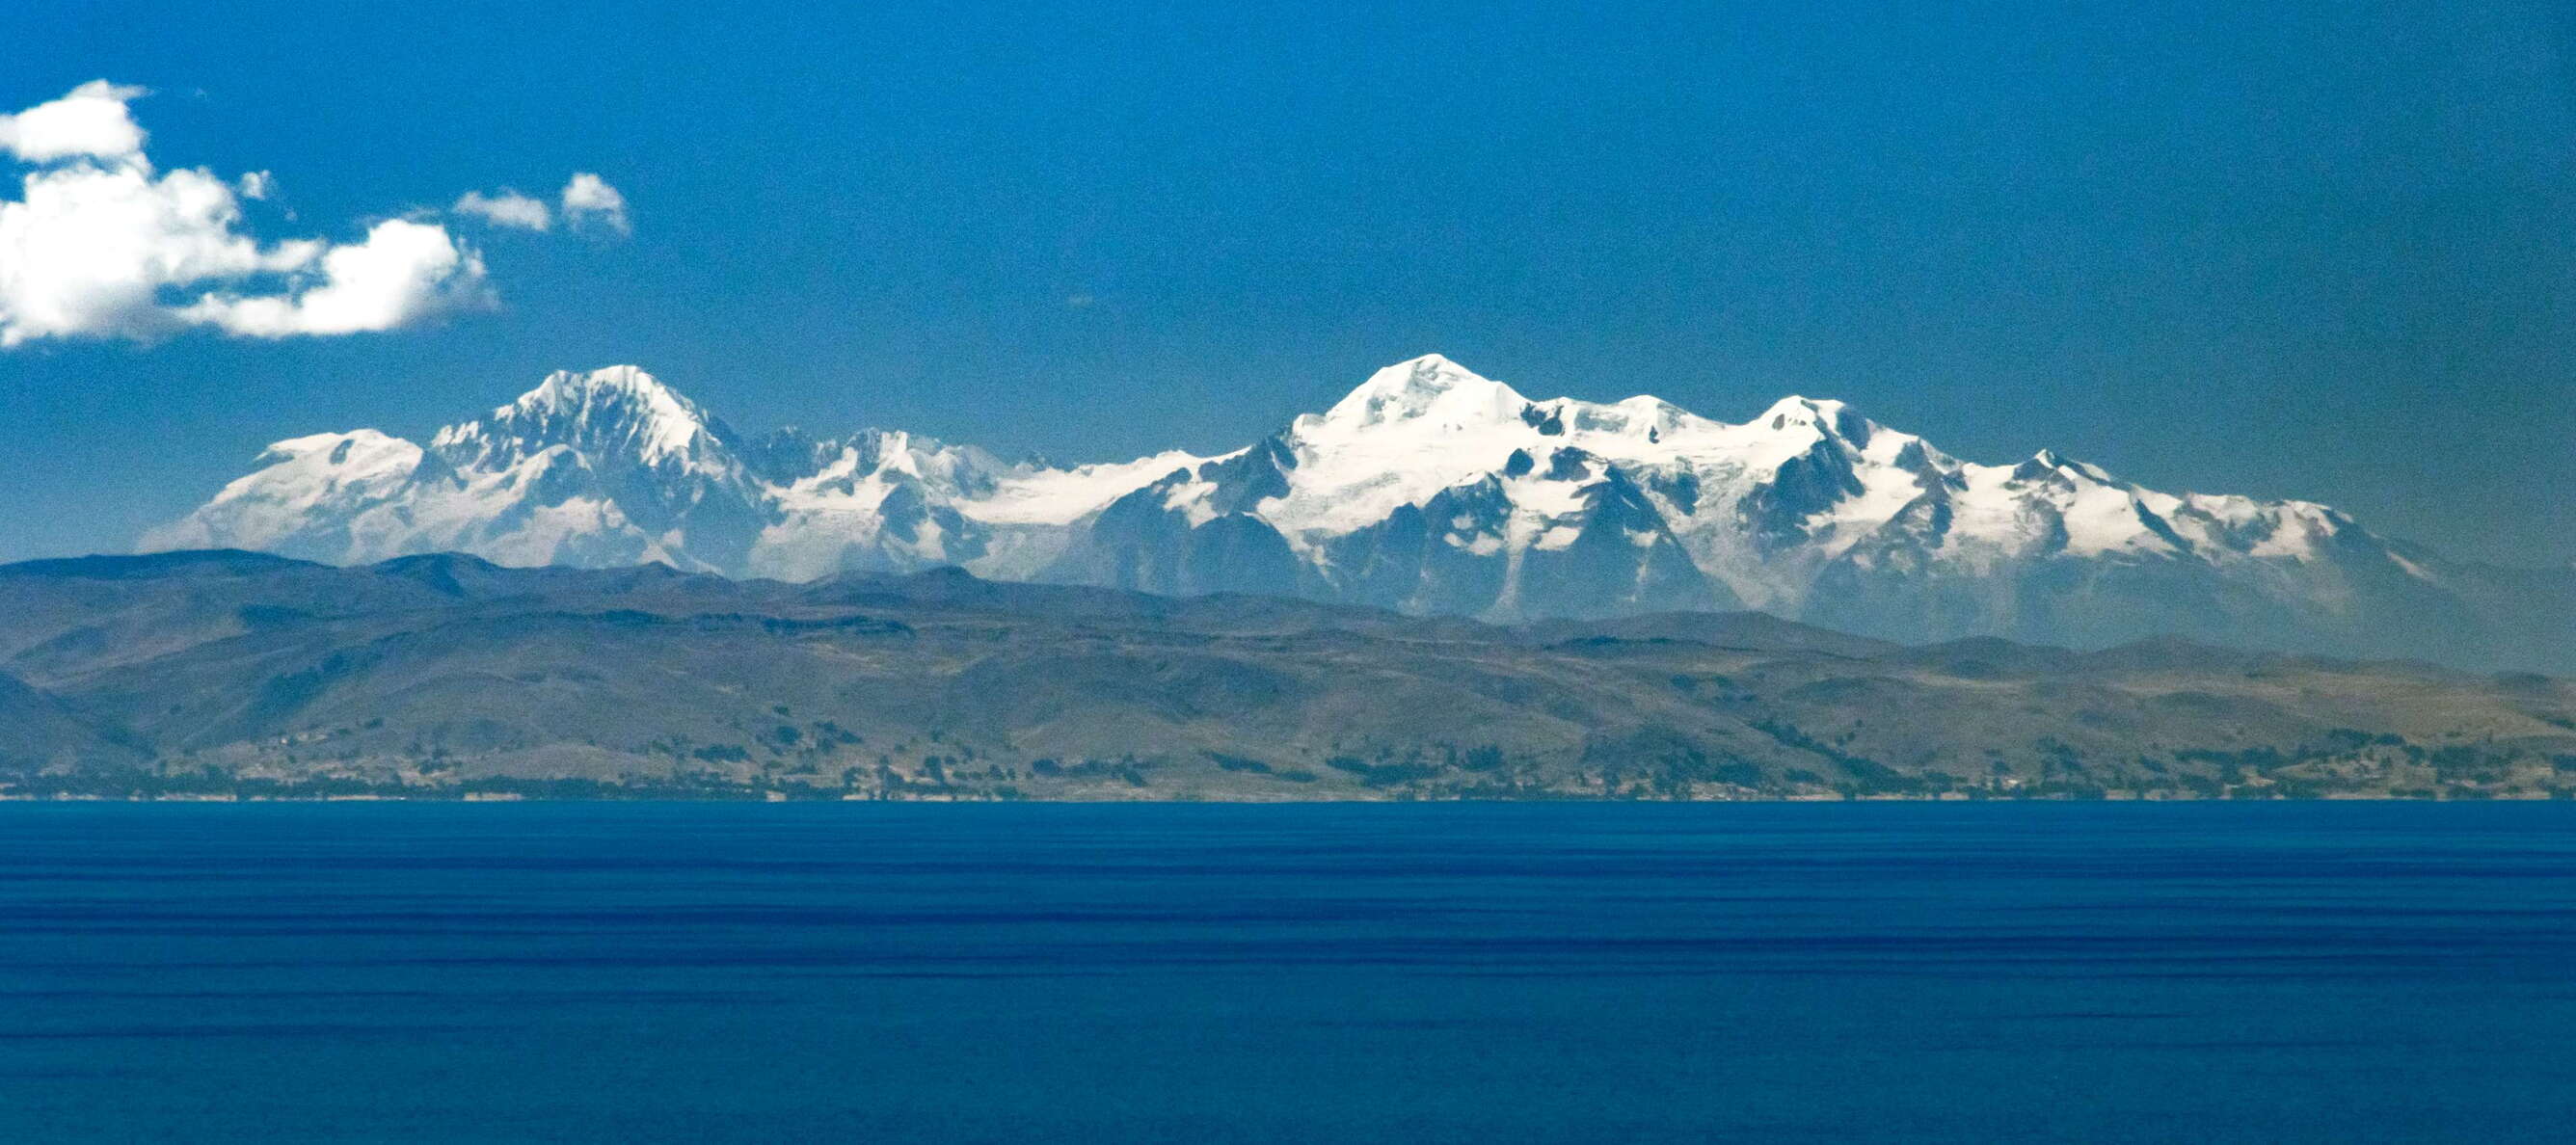 Lago Titicaca with Cordillera Real